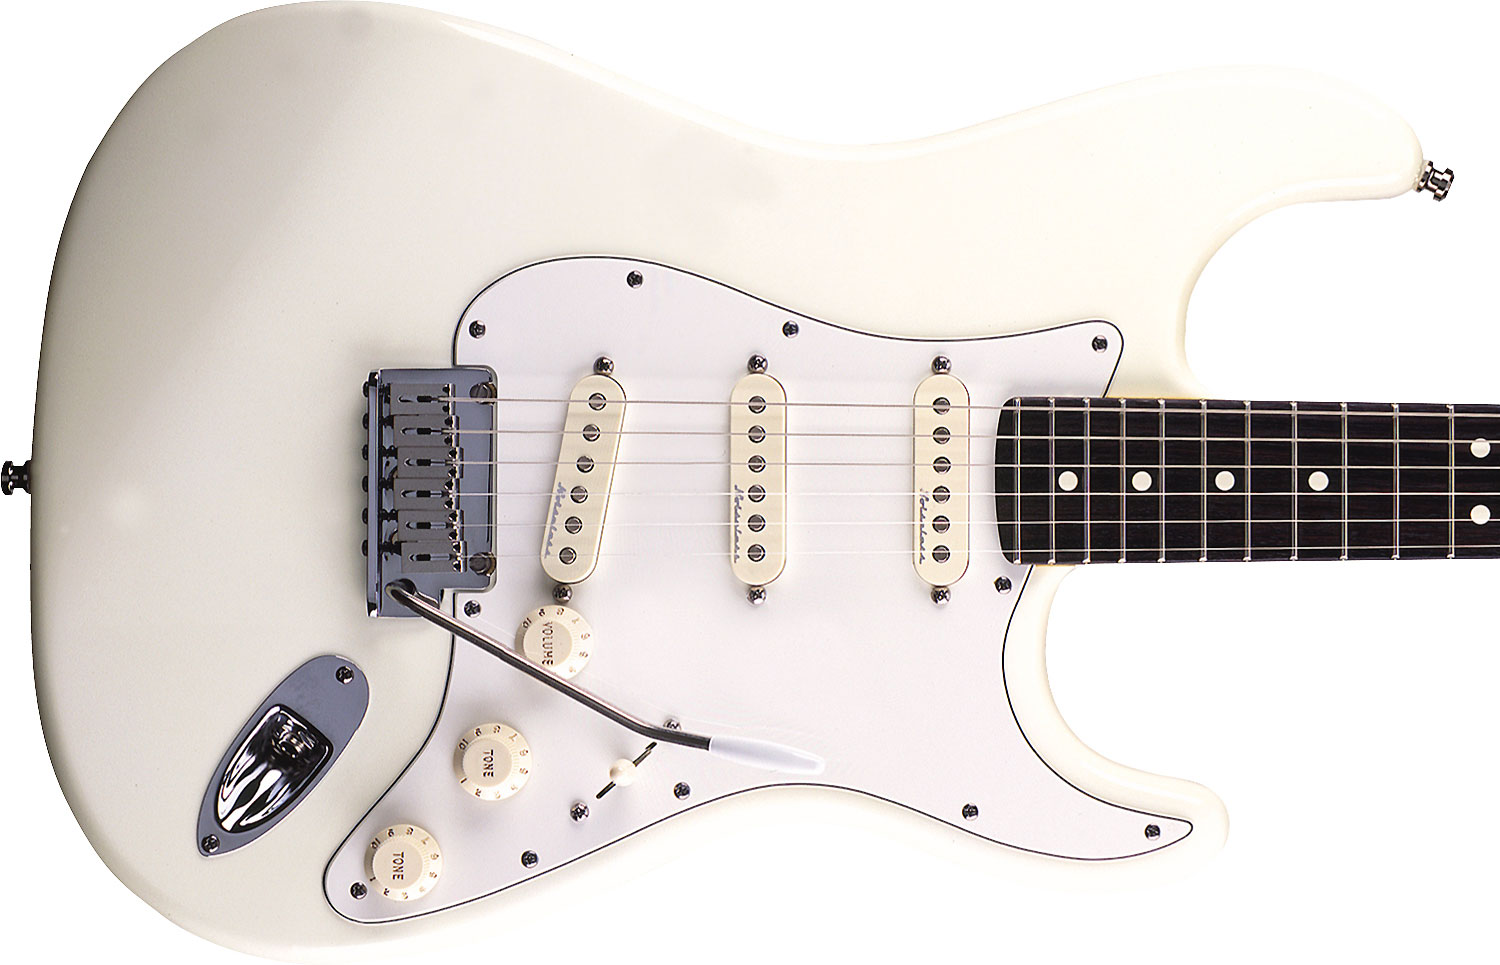 Fender Jeff Beck Strat Usa Signature 3s Trem Rw - Olympic White - Elektrische gitaar in Str-vorm - Variation 2